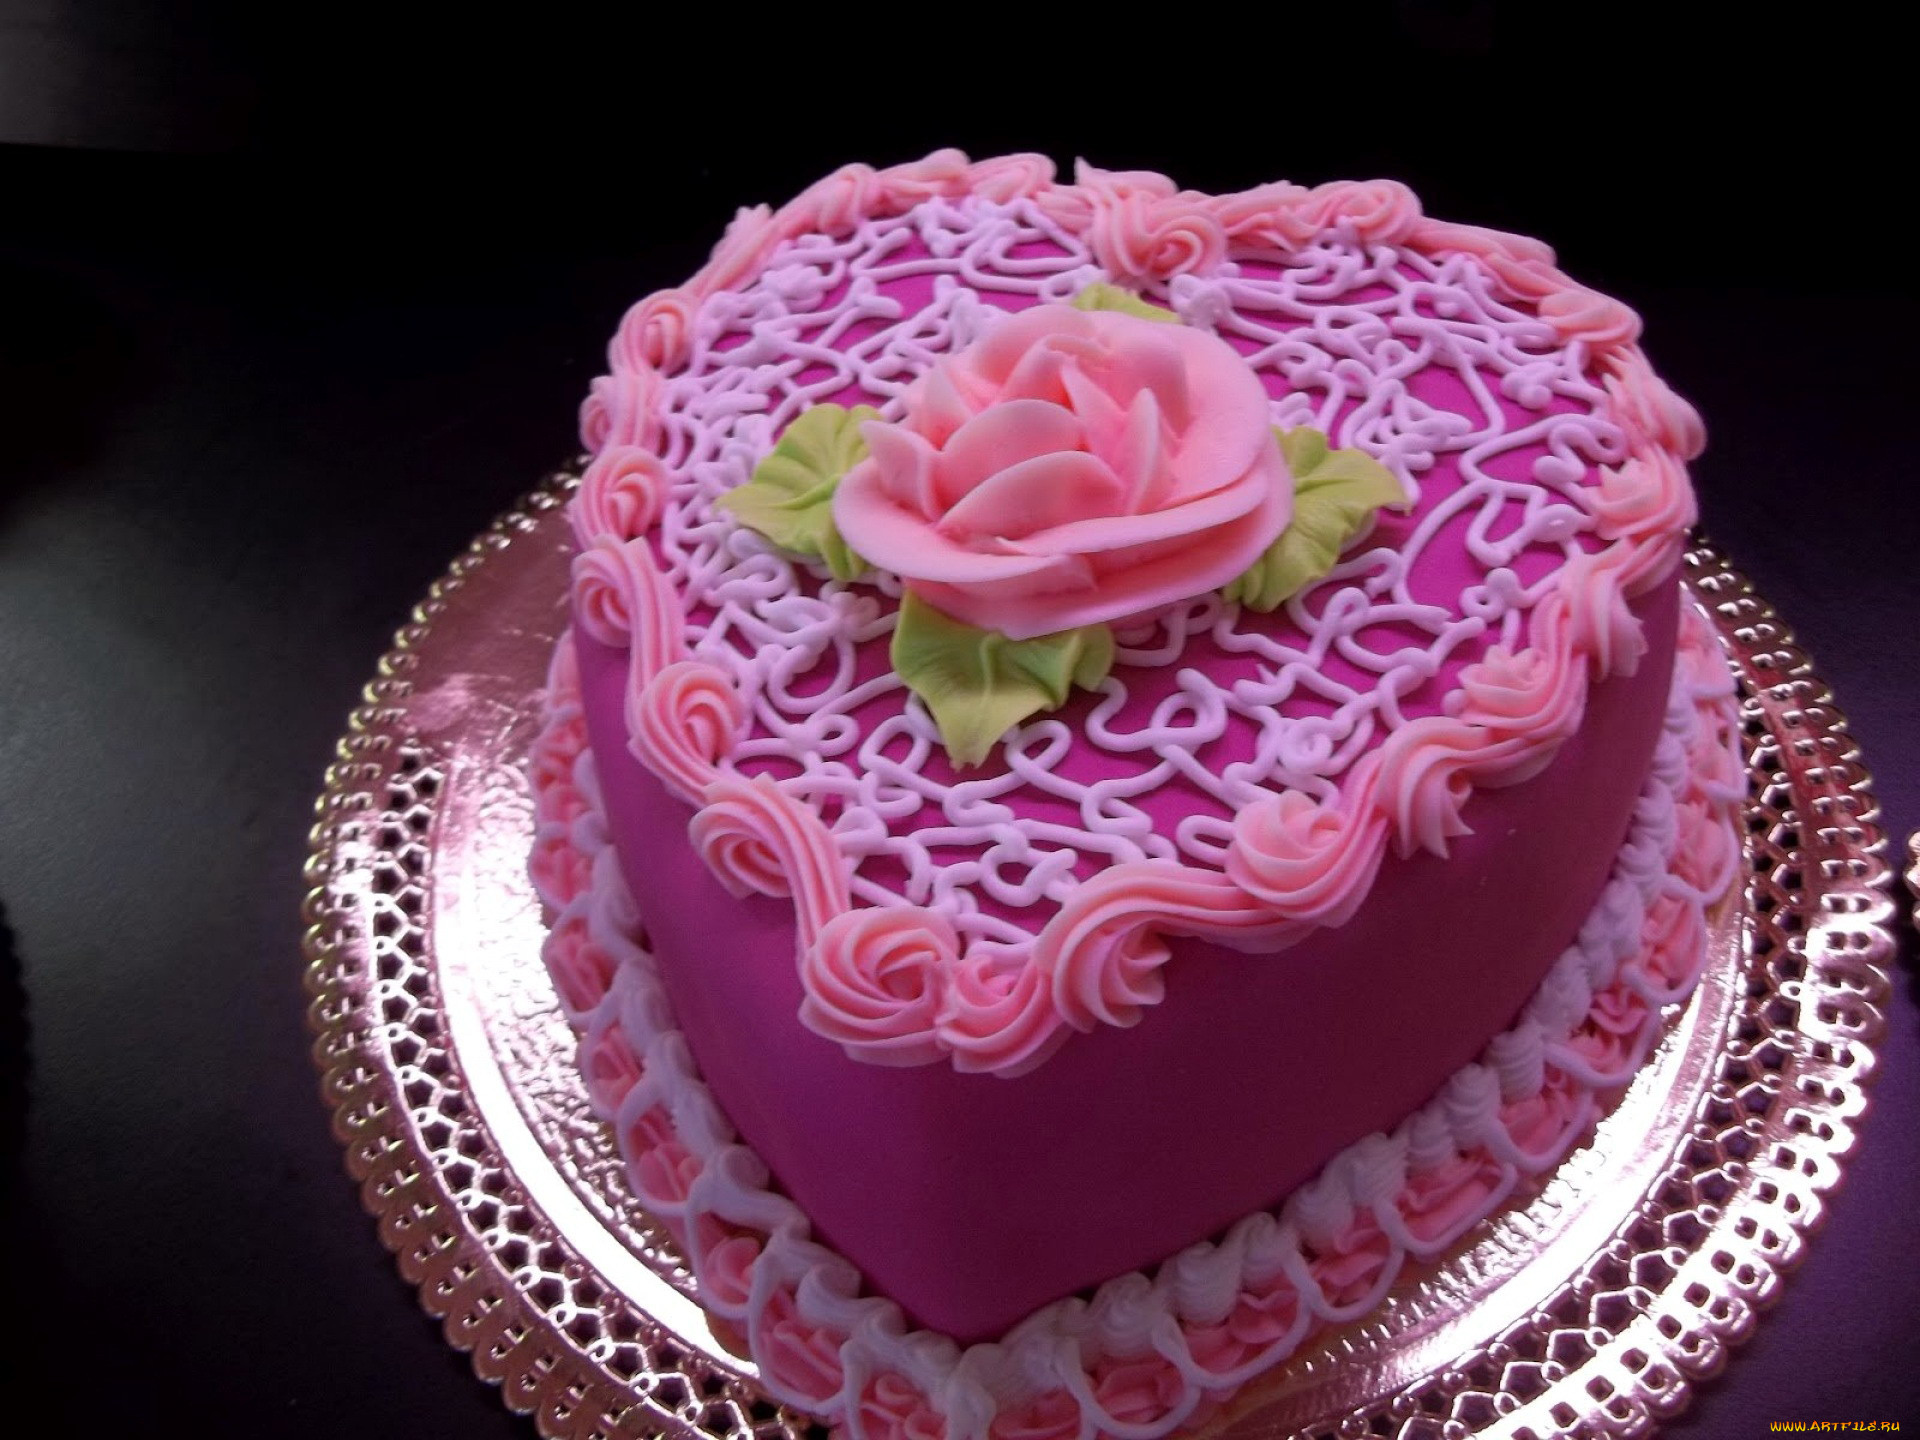 Над воротами занялась красивее торты. Красивые торты. Красивые торты на день рождения. Торт для женщины. Торт на день рождения женщине.